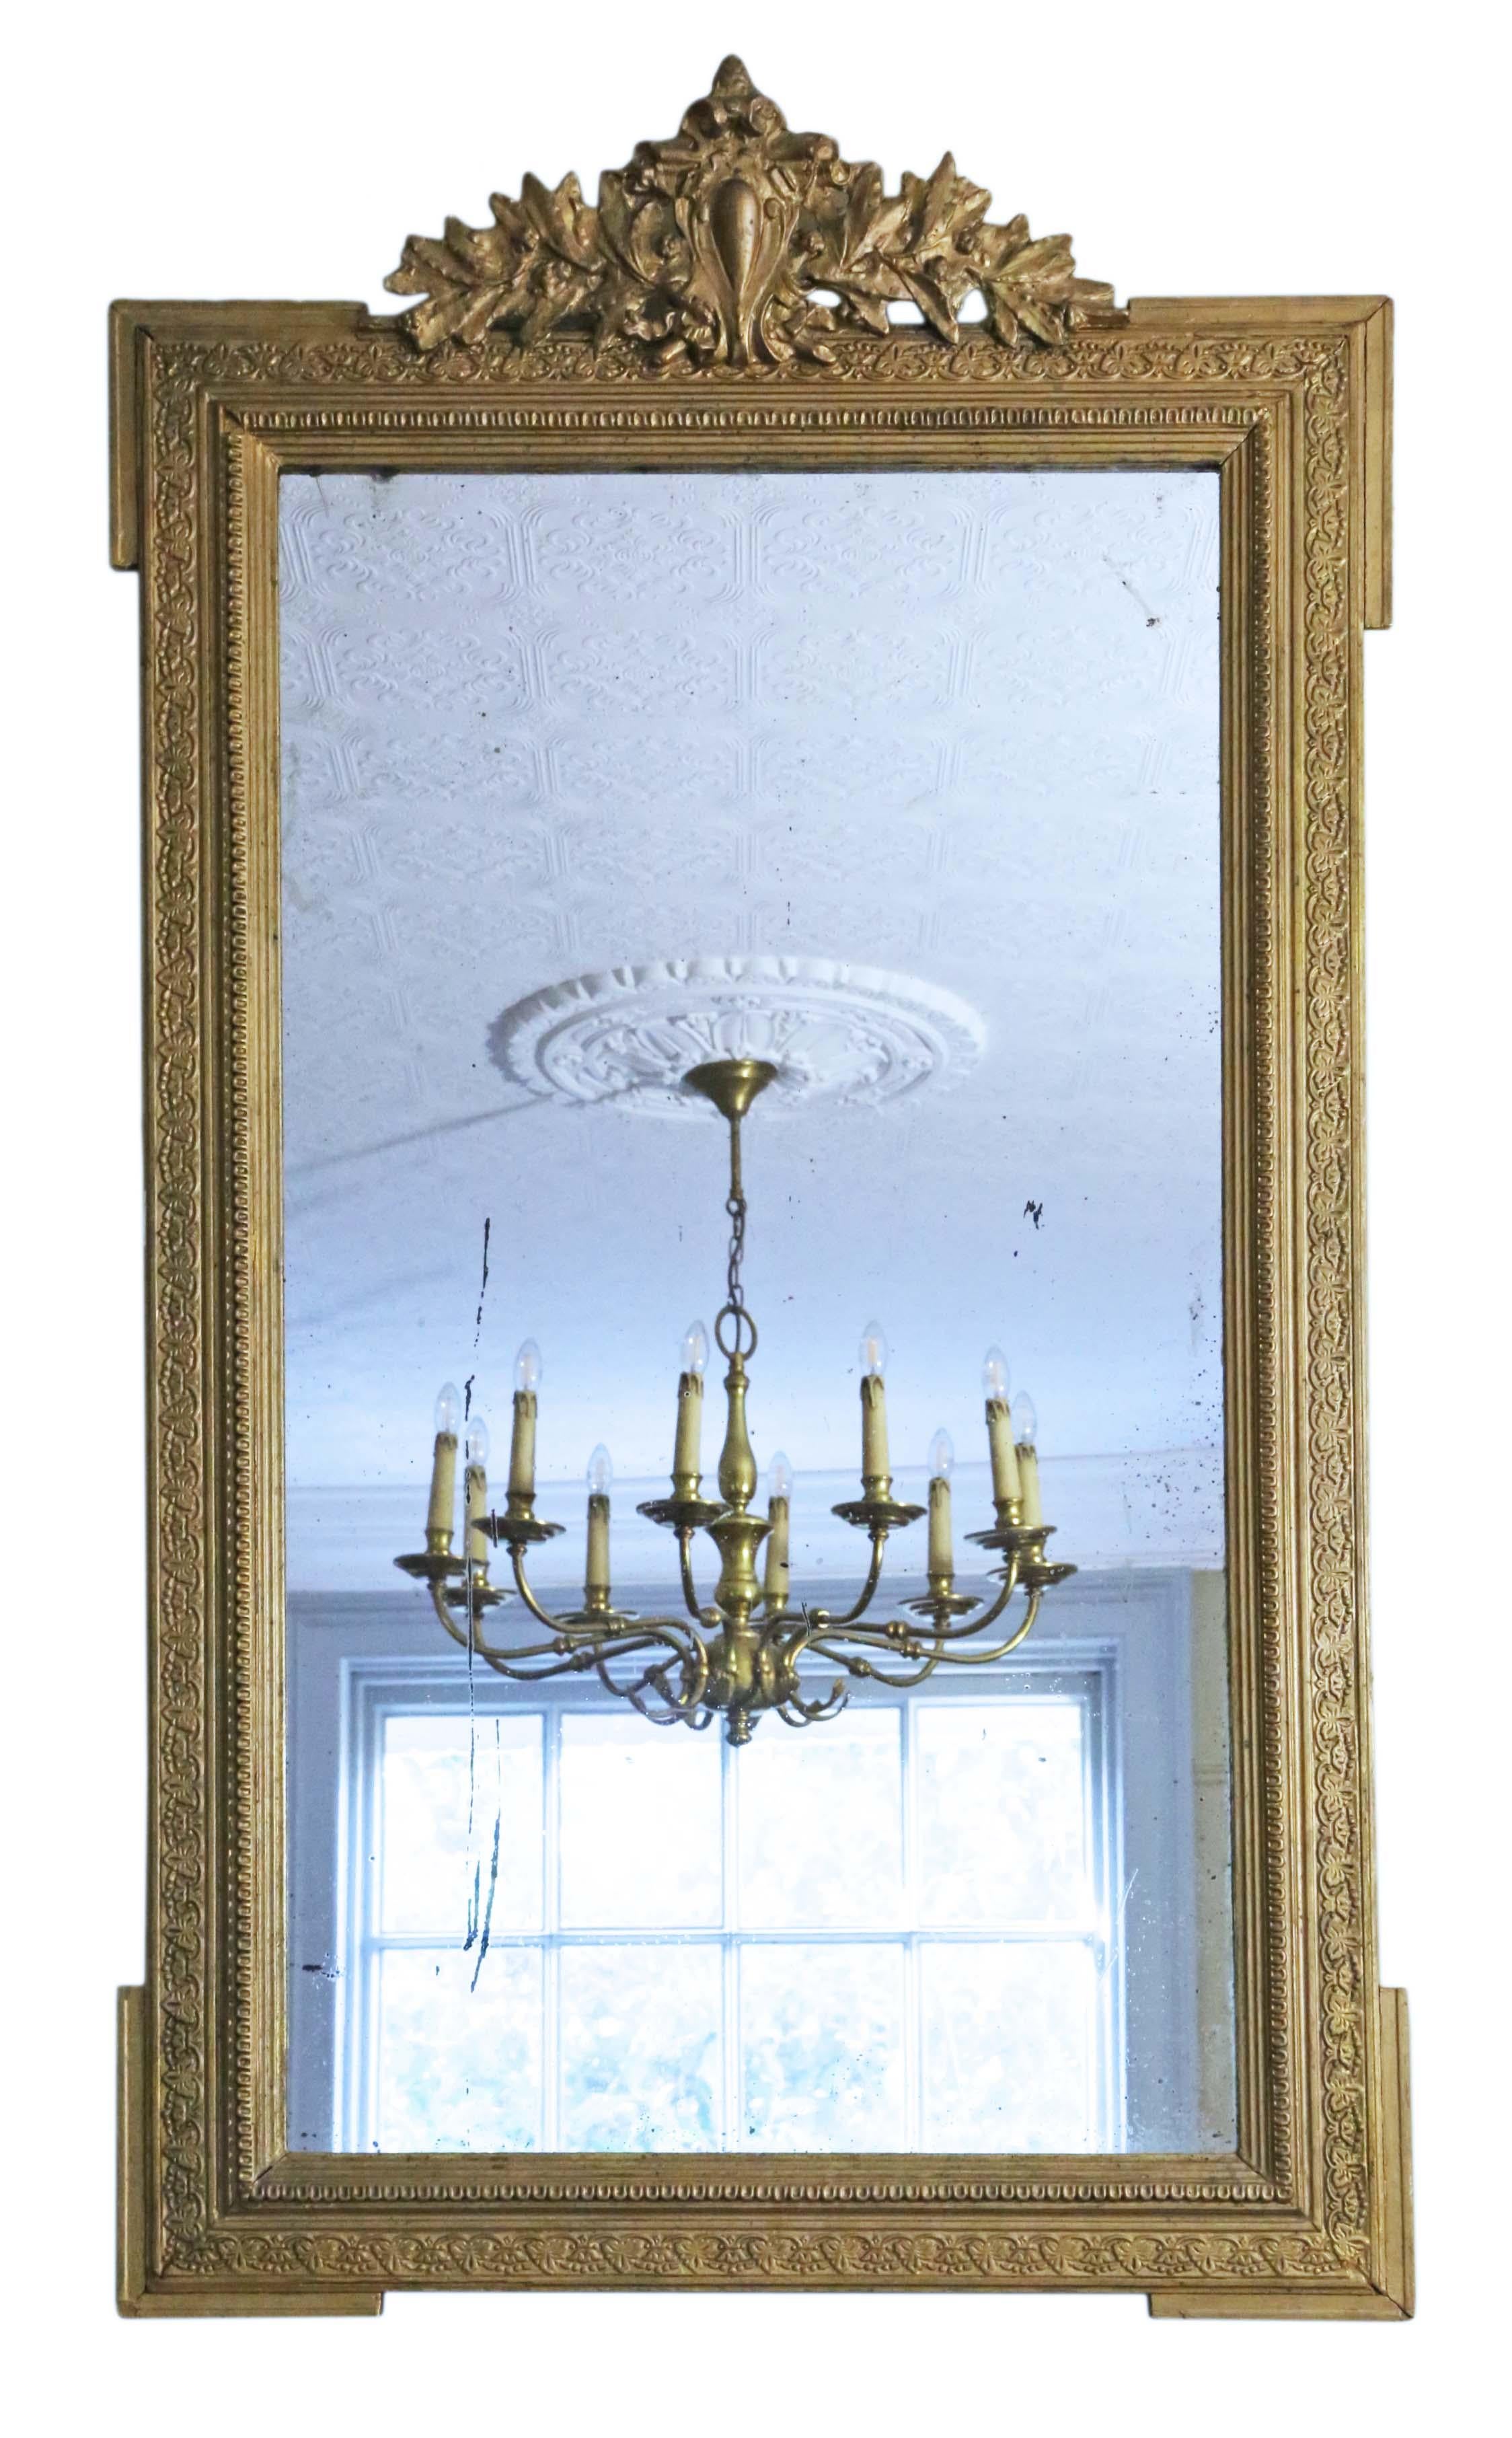 Antique rare grand miroir mural de qualité supérieure du 19ème siècle, doré et de grande taille. Le miroir a son verre et son dos d'origine. Le cadre a une belle finition dorée d'origine avec une patine, des pertes mineures et des retouches ici et